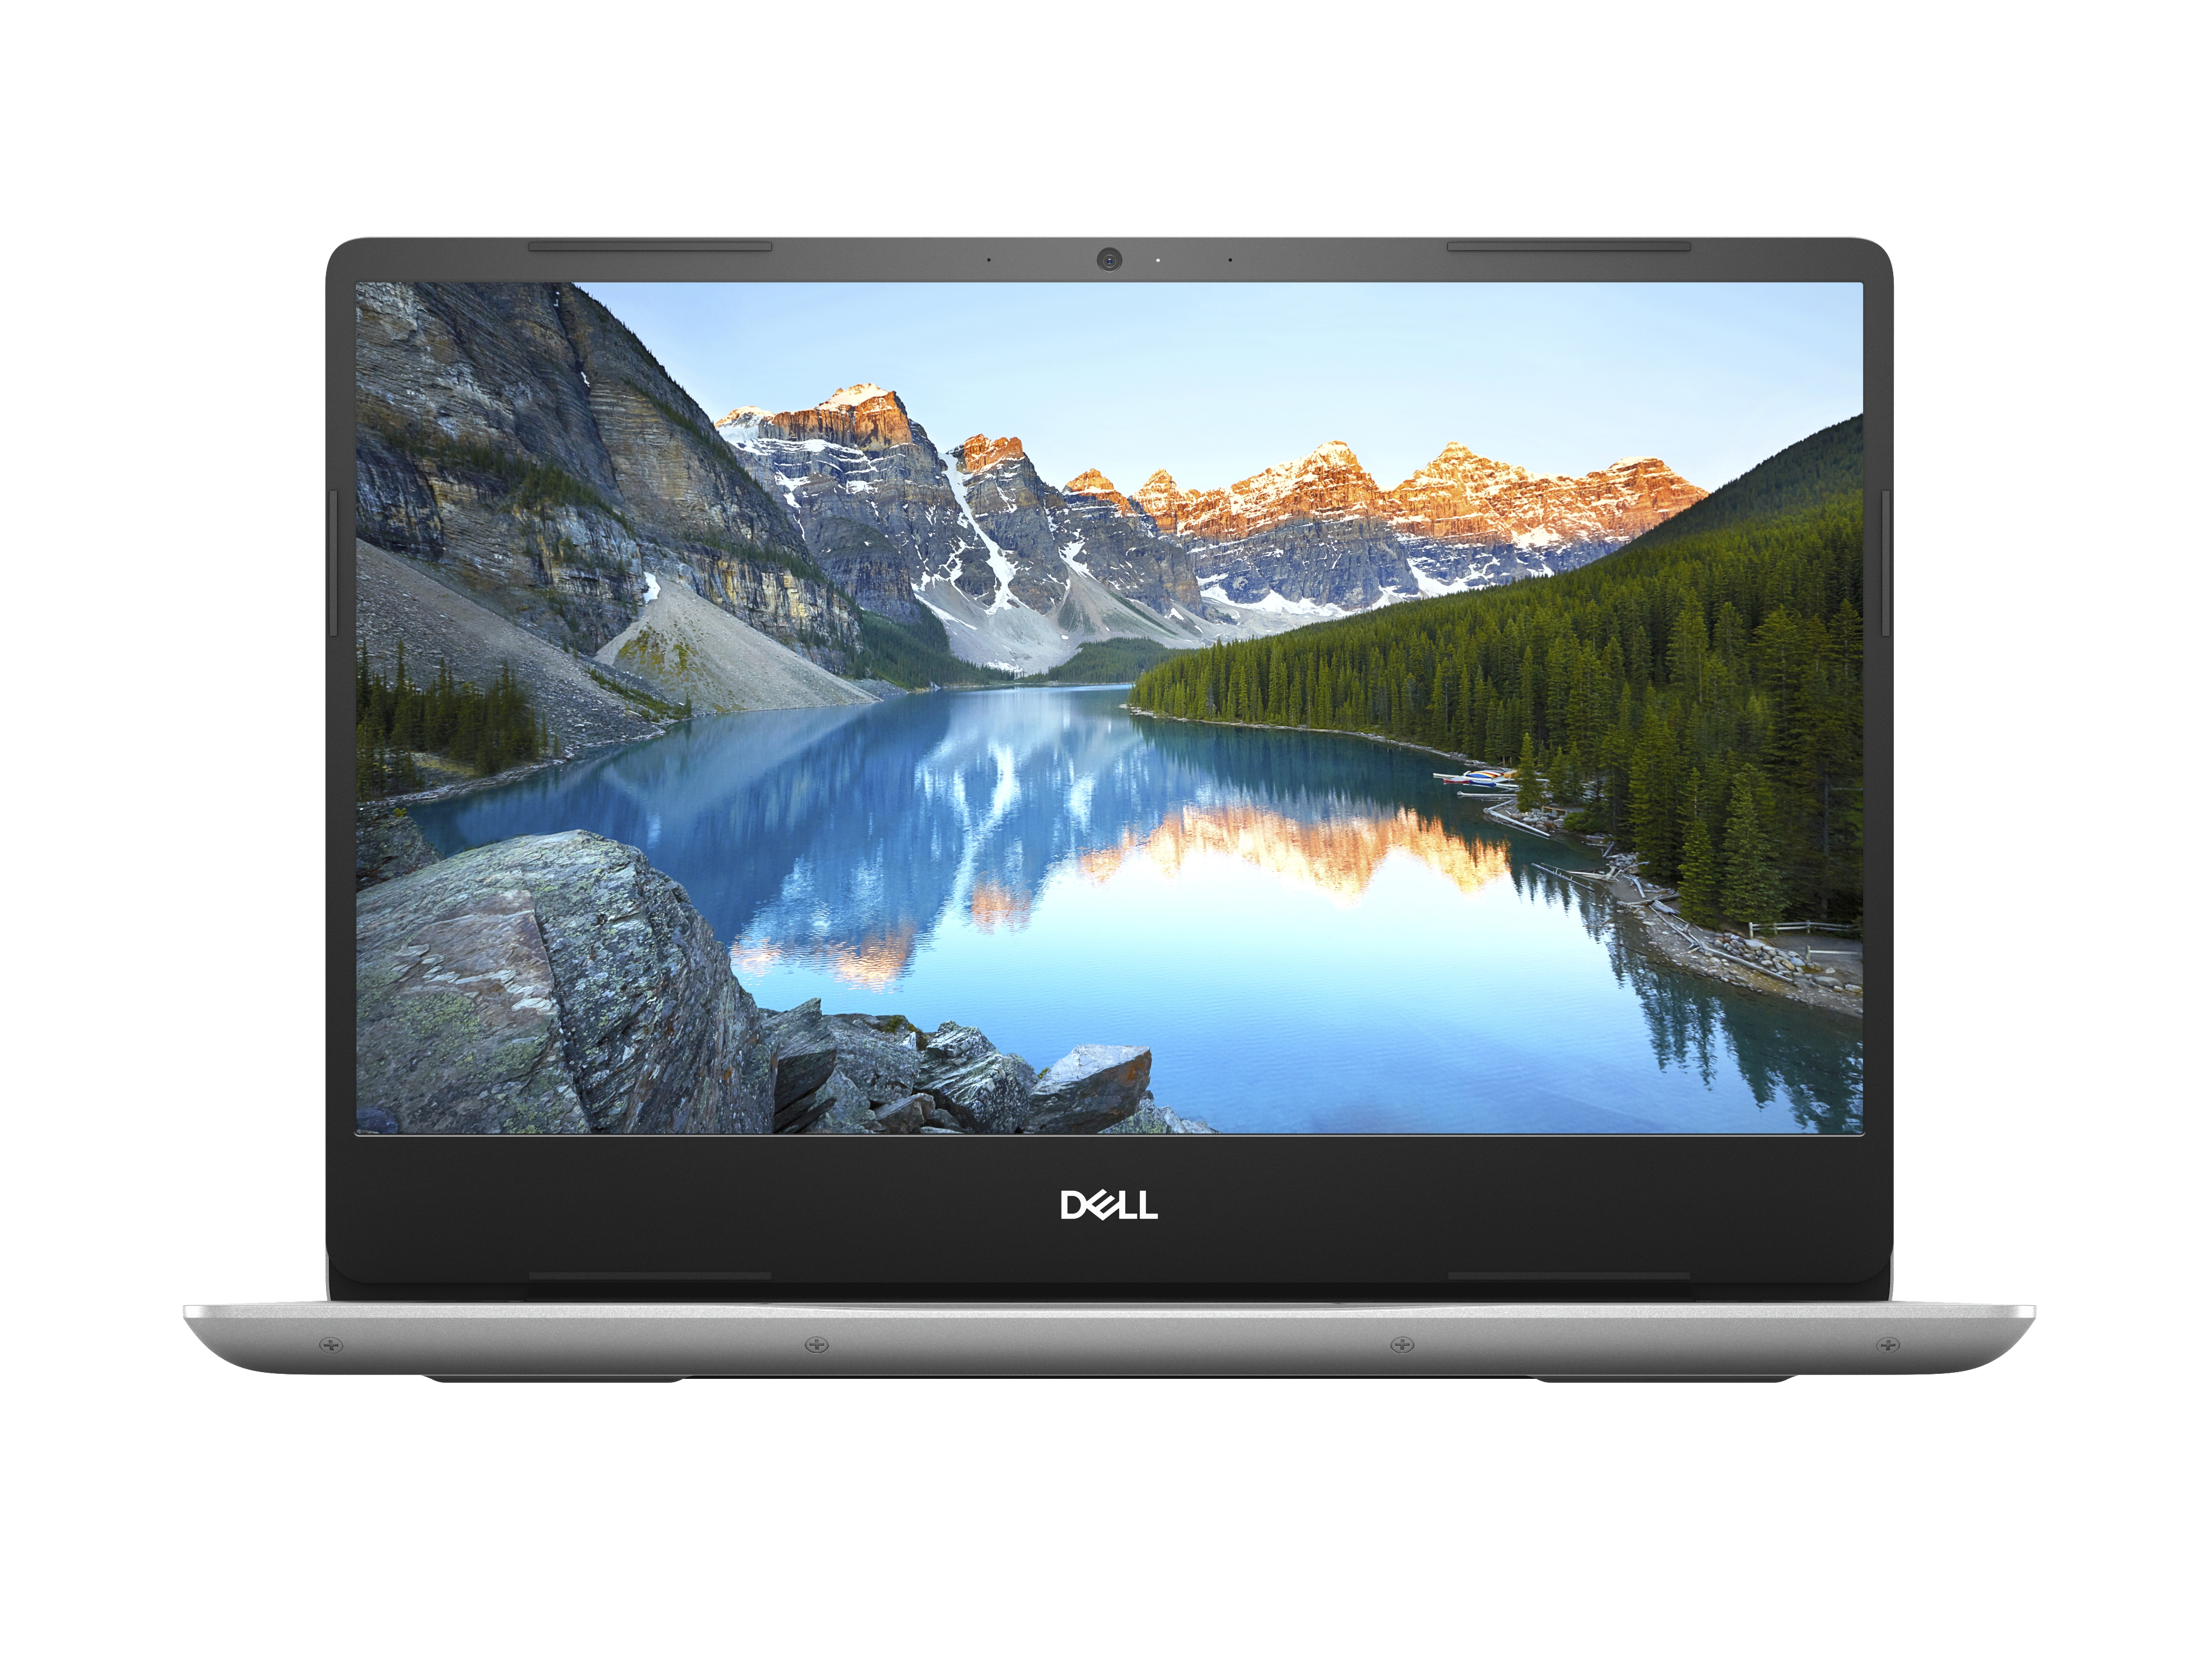 Laptop Dell Inspiron 5480 Core I7 8565 8G 1T+128G Gfmx150 14" W10 Gtjd